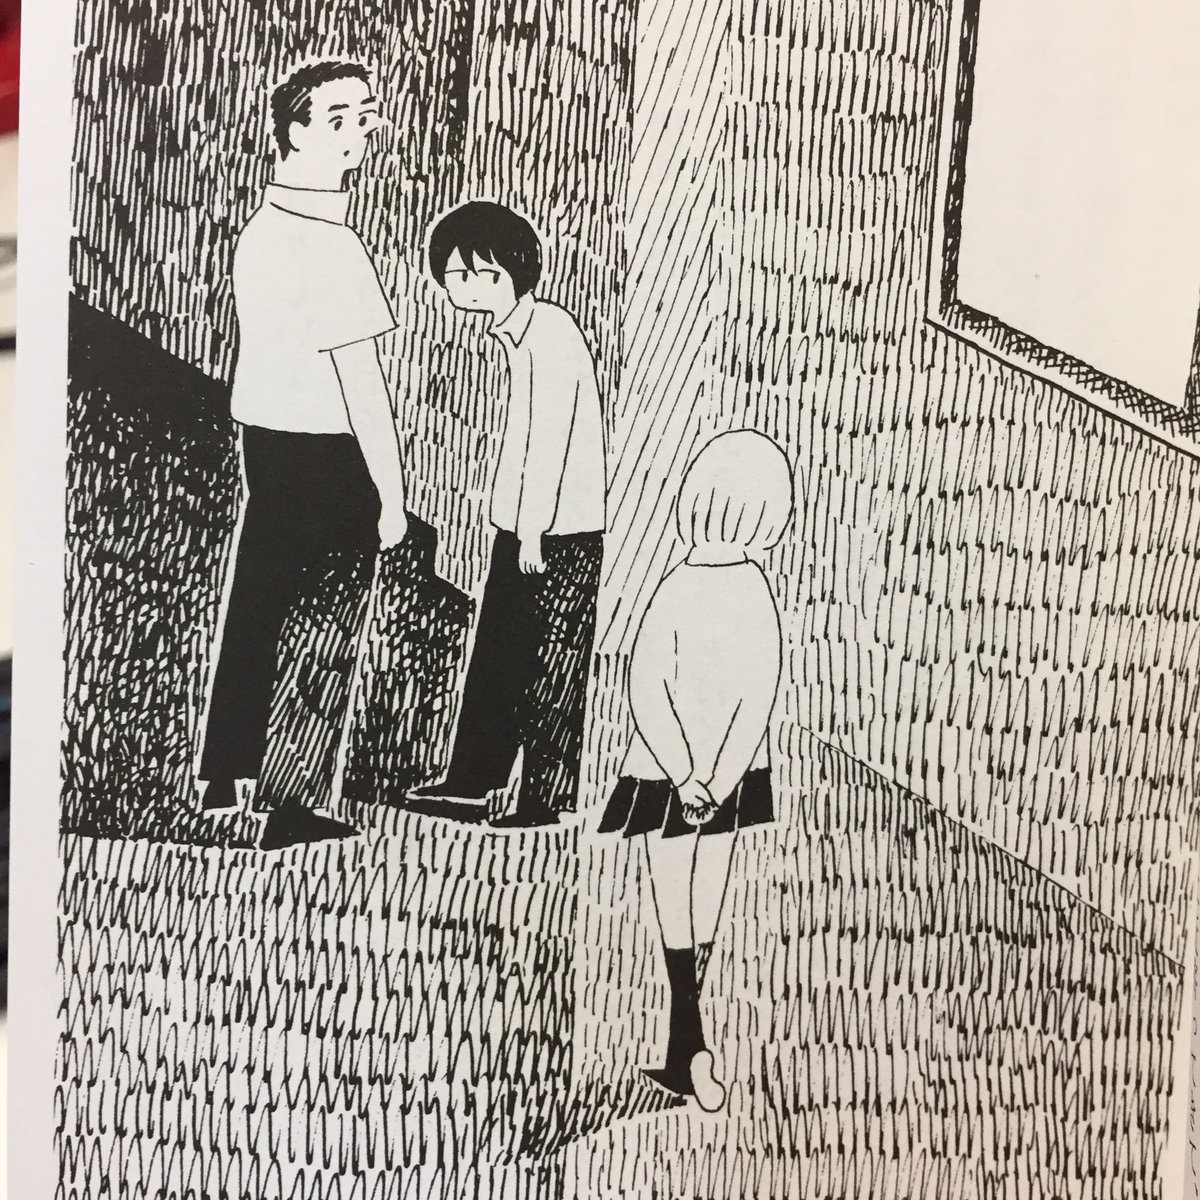 博多駅前の陥没事故、佐藤哲也さんの小説「シンドローム」を思い出した。(西村さんの挿絵が良い) 